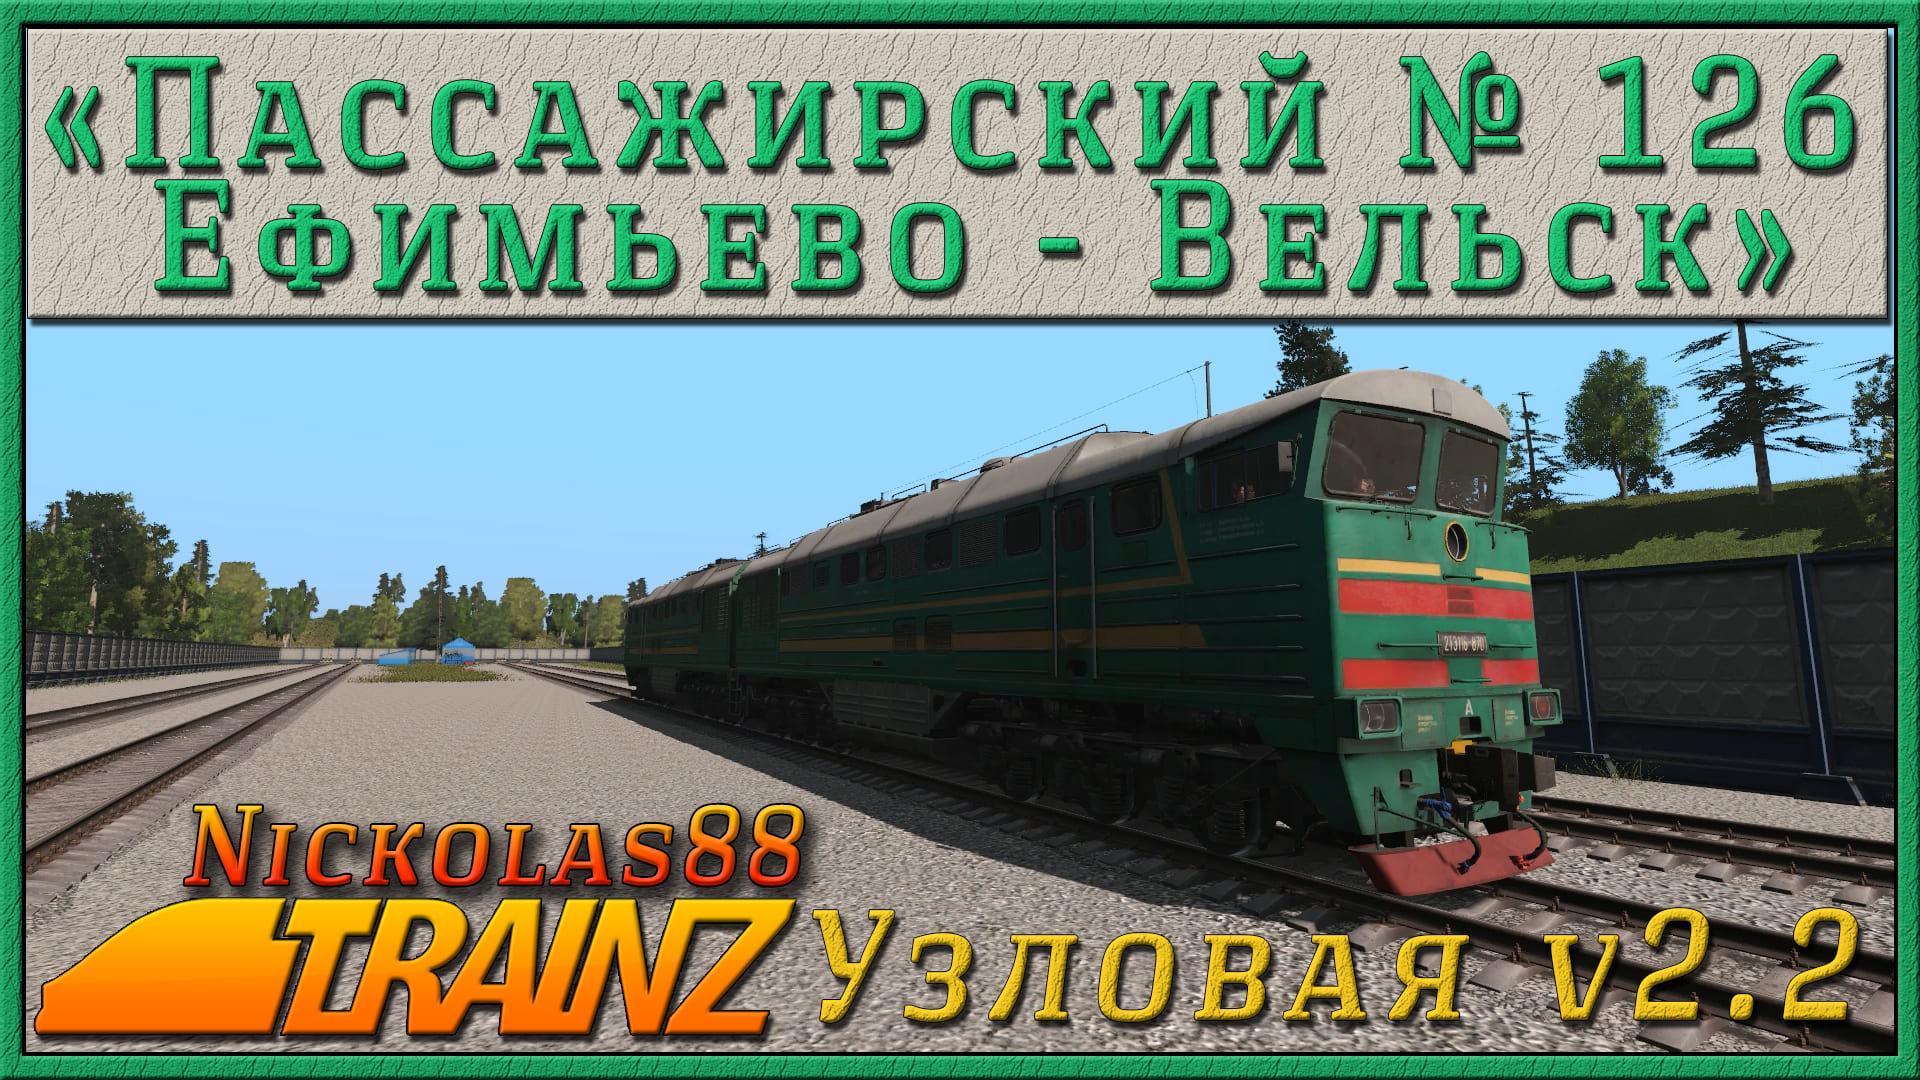 Сценарий "Пассажирский Ефимьево - Вельск". Trainz Railroad Simulator 2019